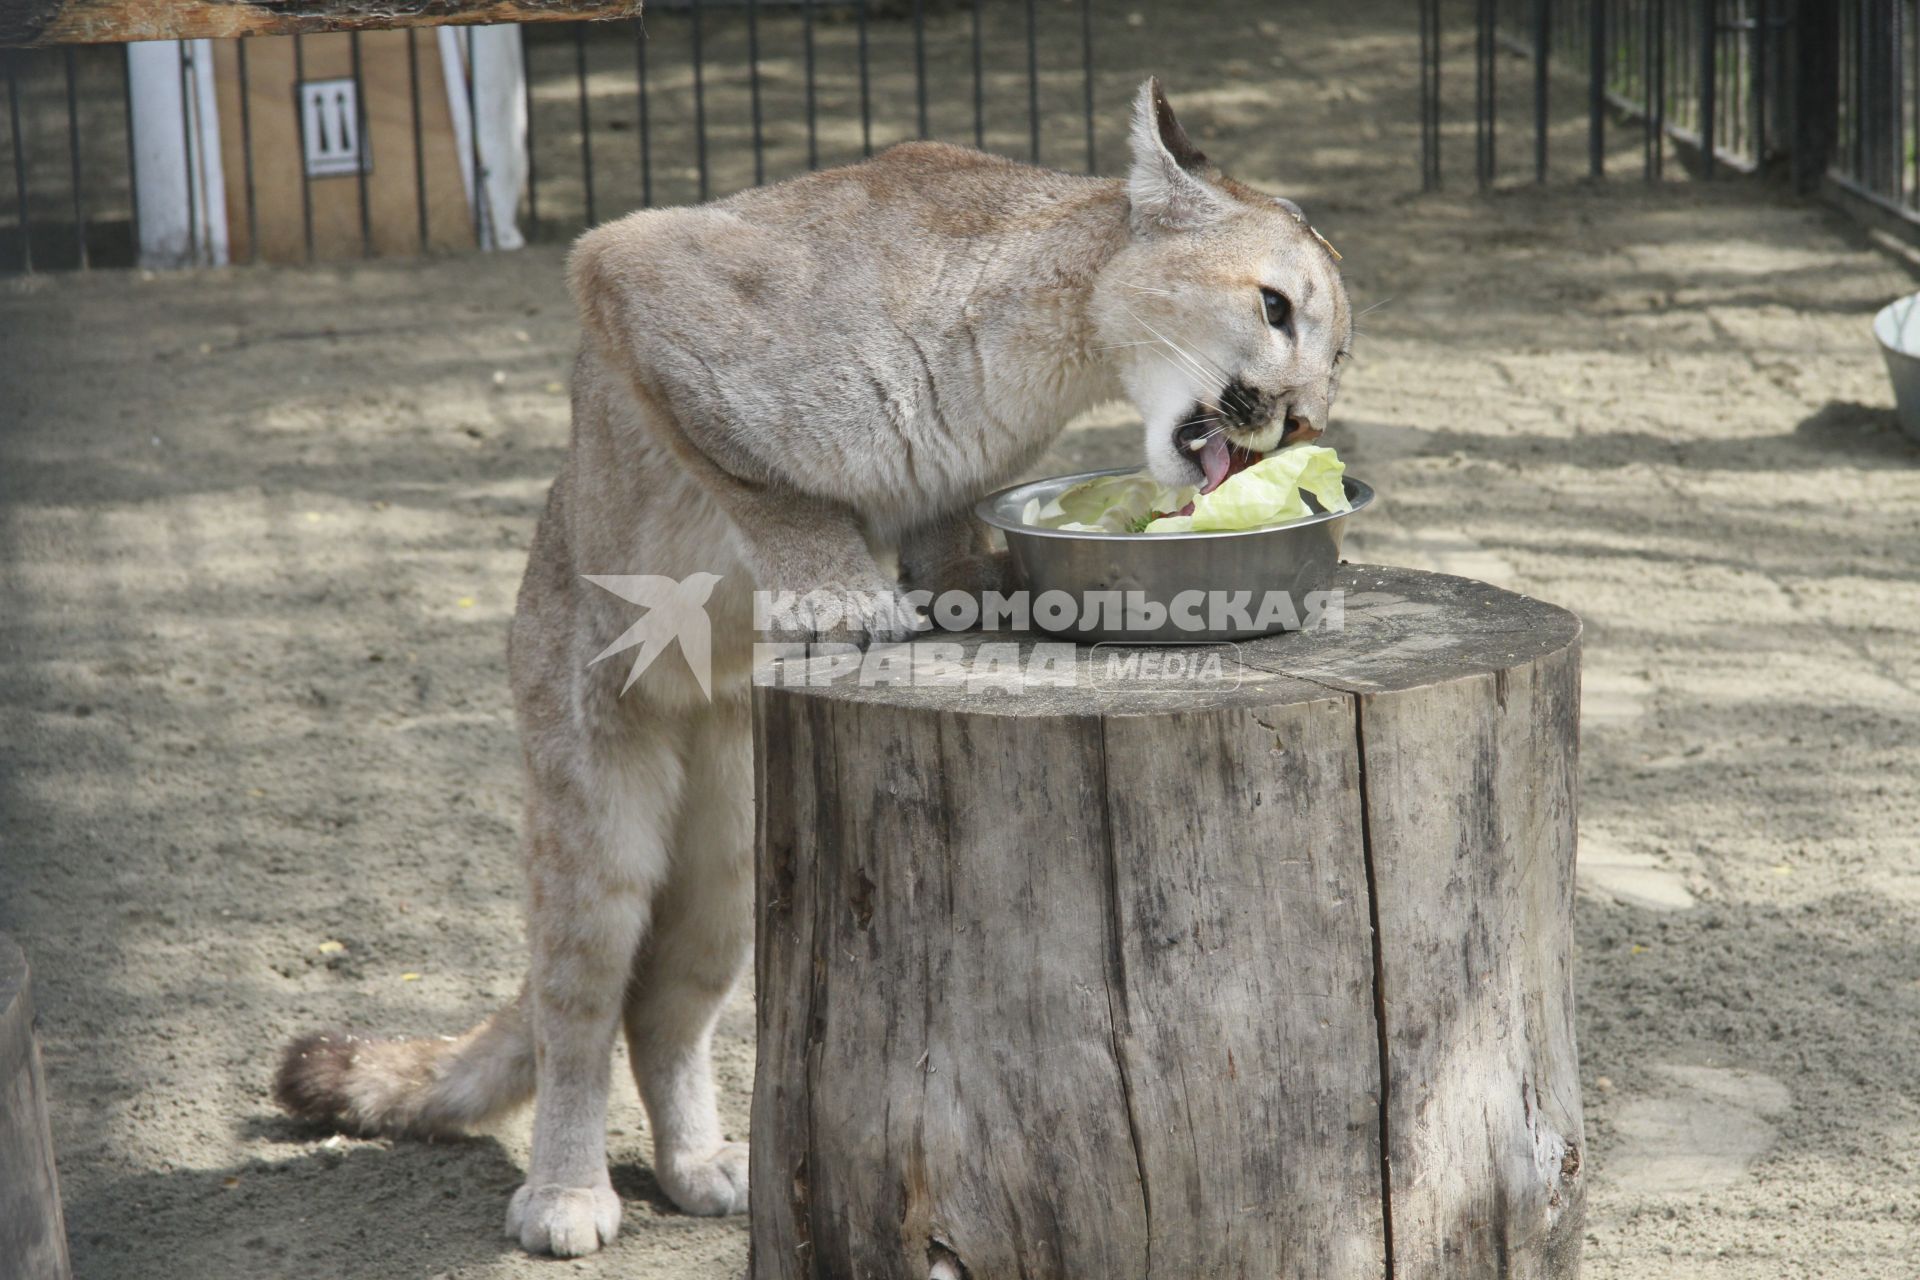 Канадская пума Клепа за праздничным обедом в честь дня рождения барнаульского зоопарка.